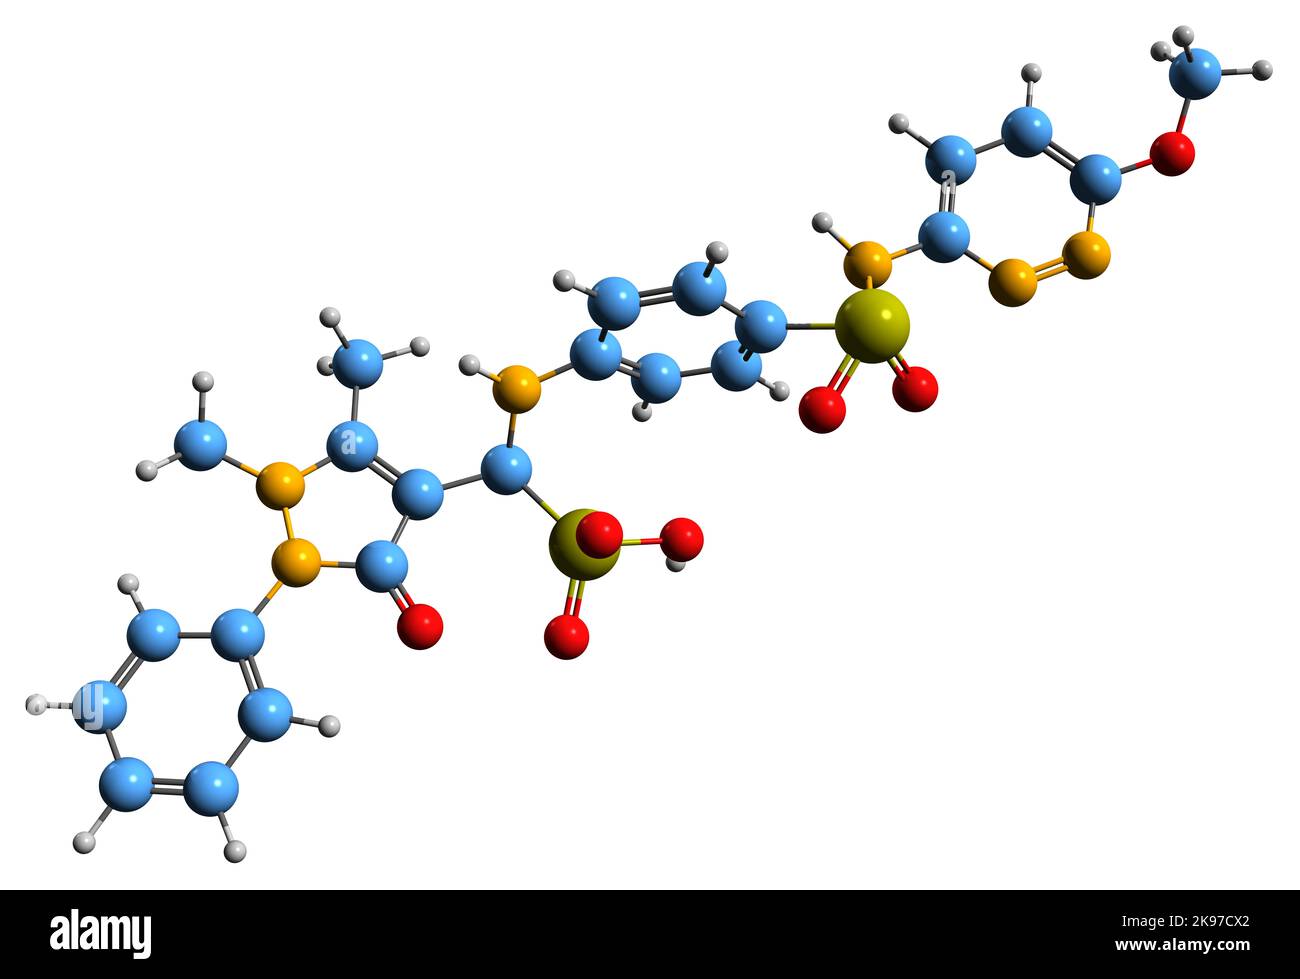 3D Bild der Sulfamazon-Skelettformel - molekulare chemische Struktur des Sulfonamid-Antibiotikums, isoliert auf weißem Hintergrund Stockfoto